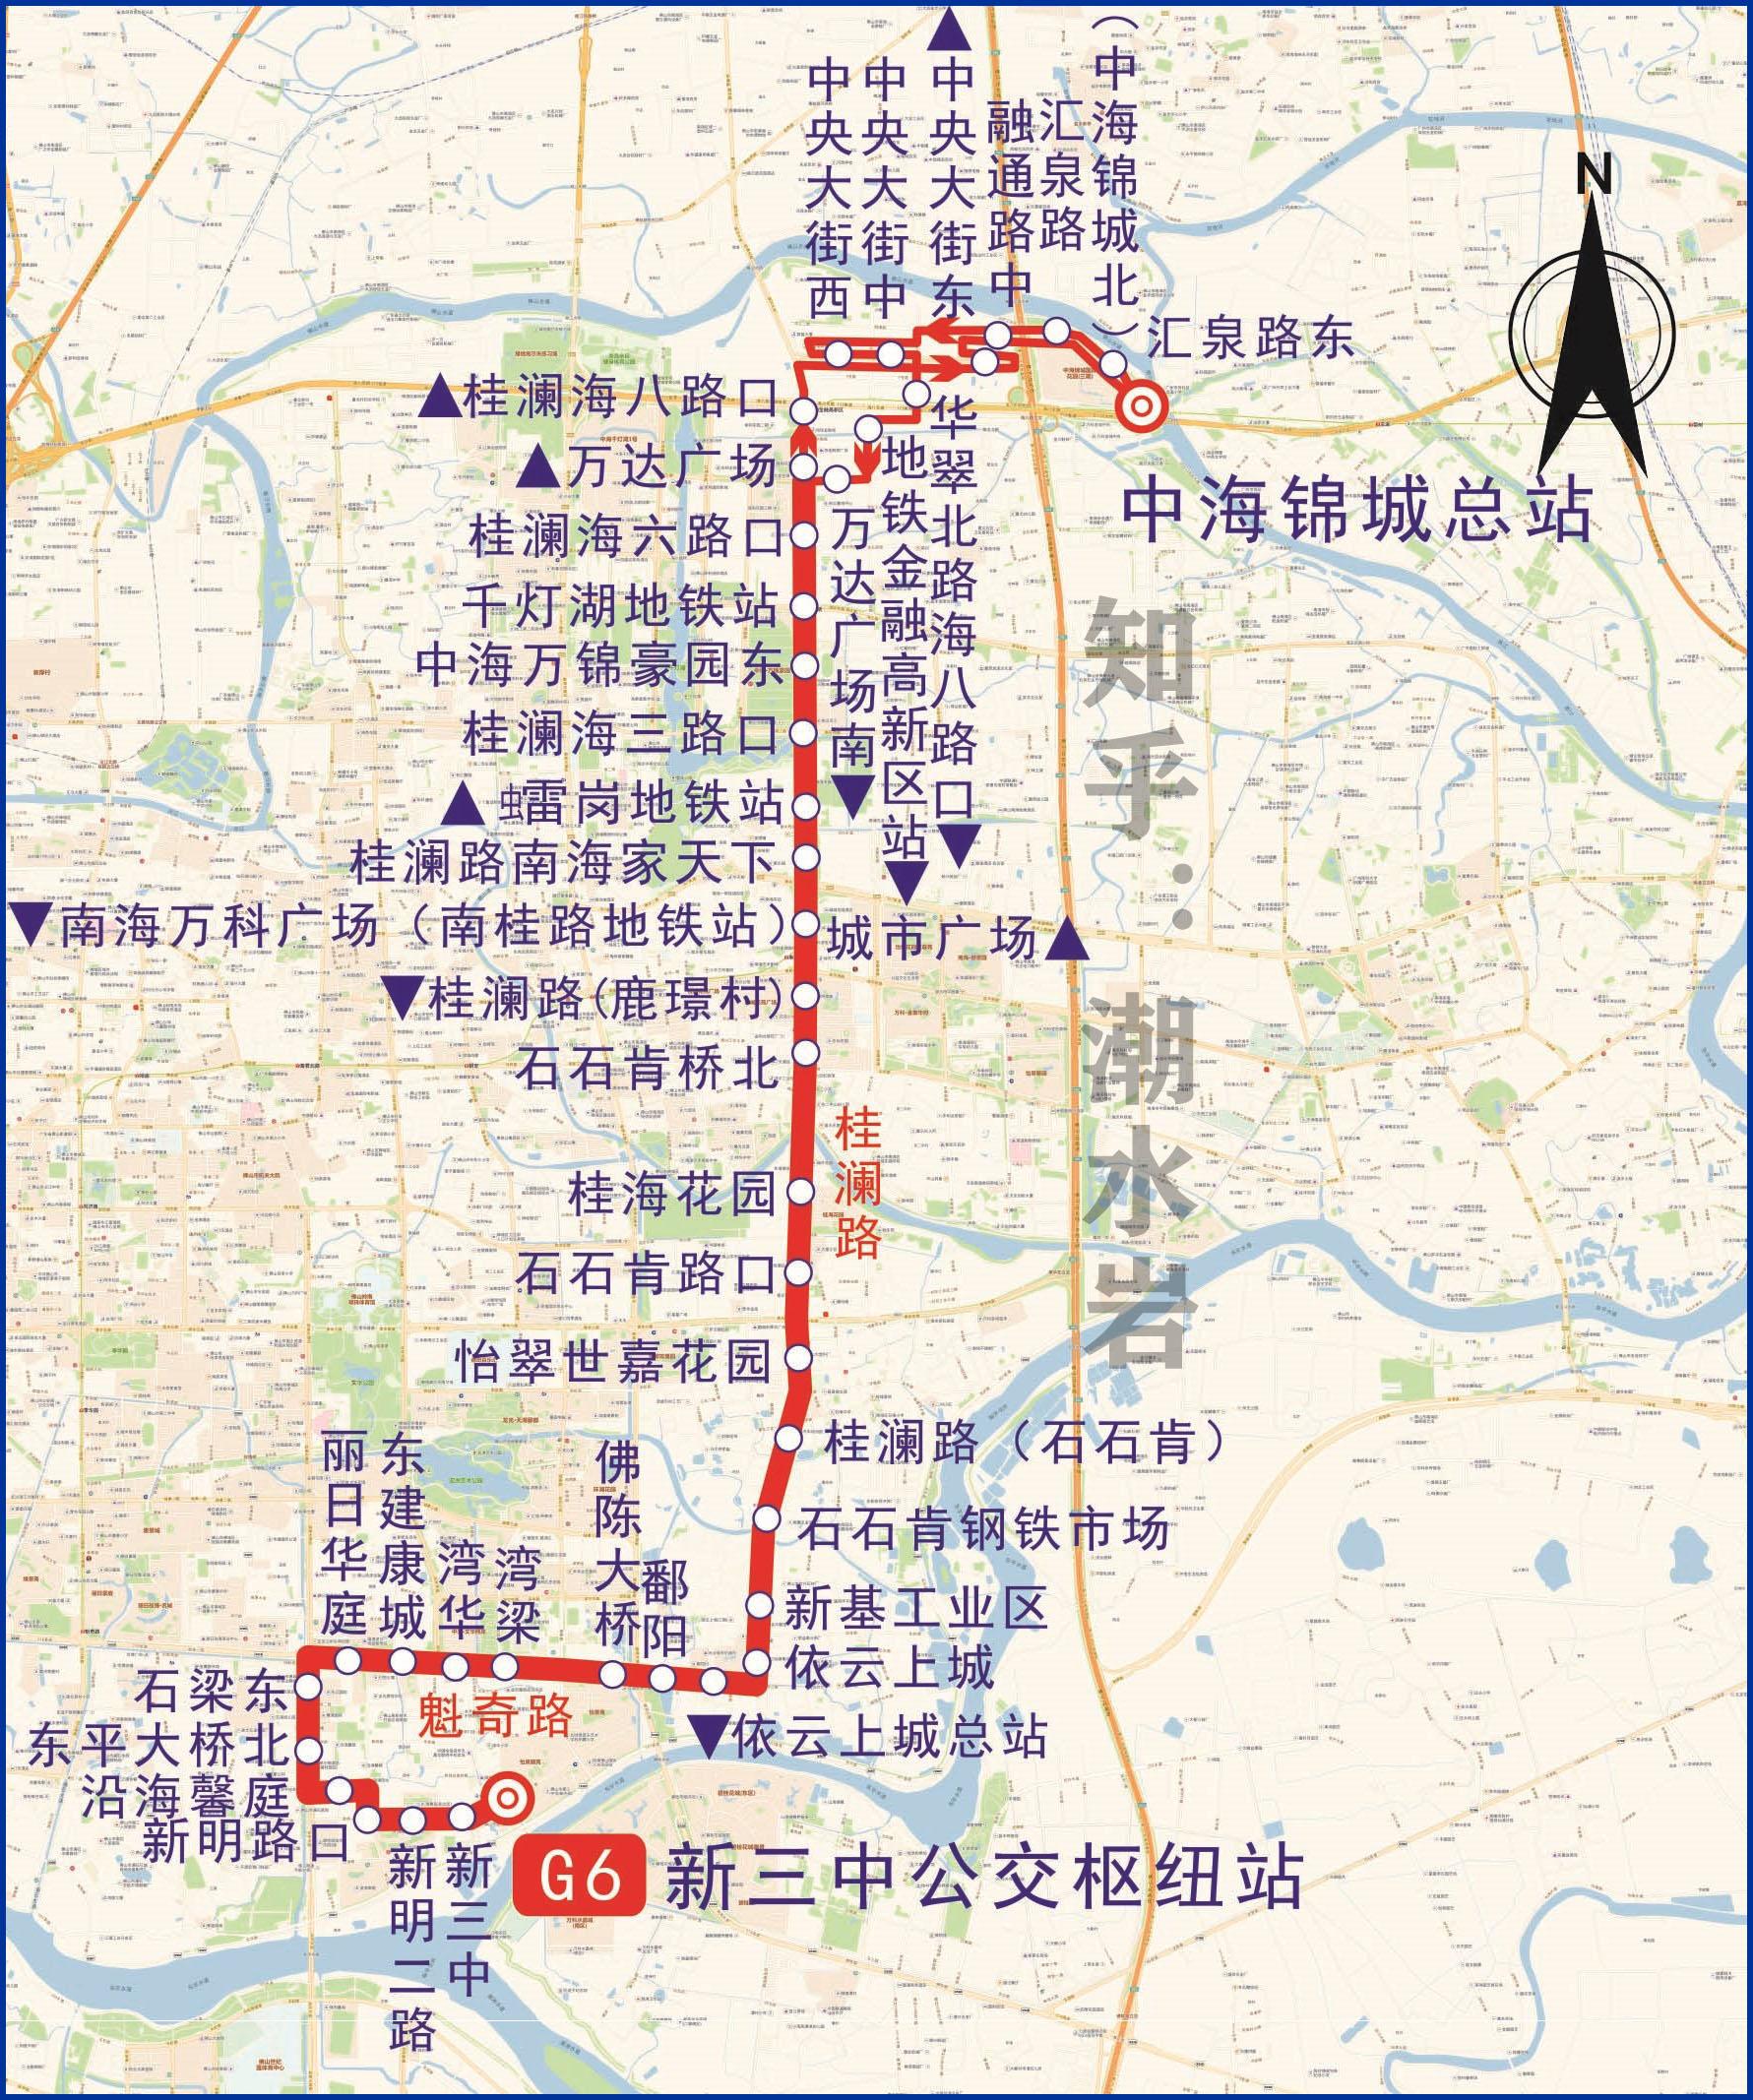 哈尔滨地铁_哈尔滨地铁线路图_哈尔滨地铁票价查询_哈尔滨地铁运营时间